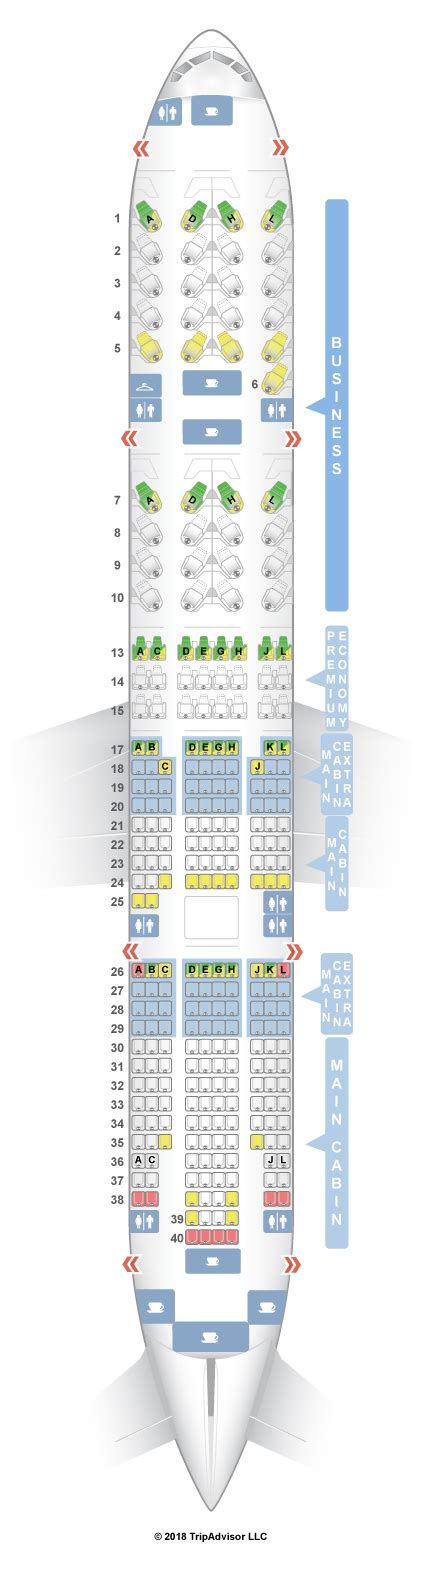 Seatguru Seat Map S Airlines Boeing Er My Xxx Hot Girl